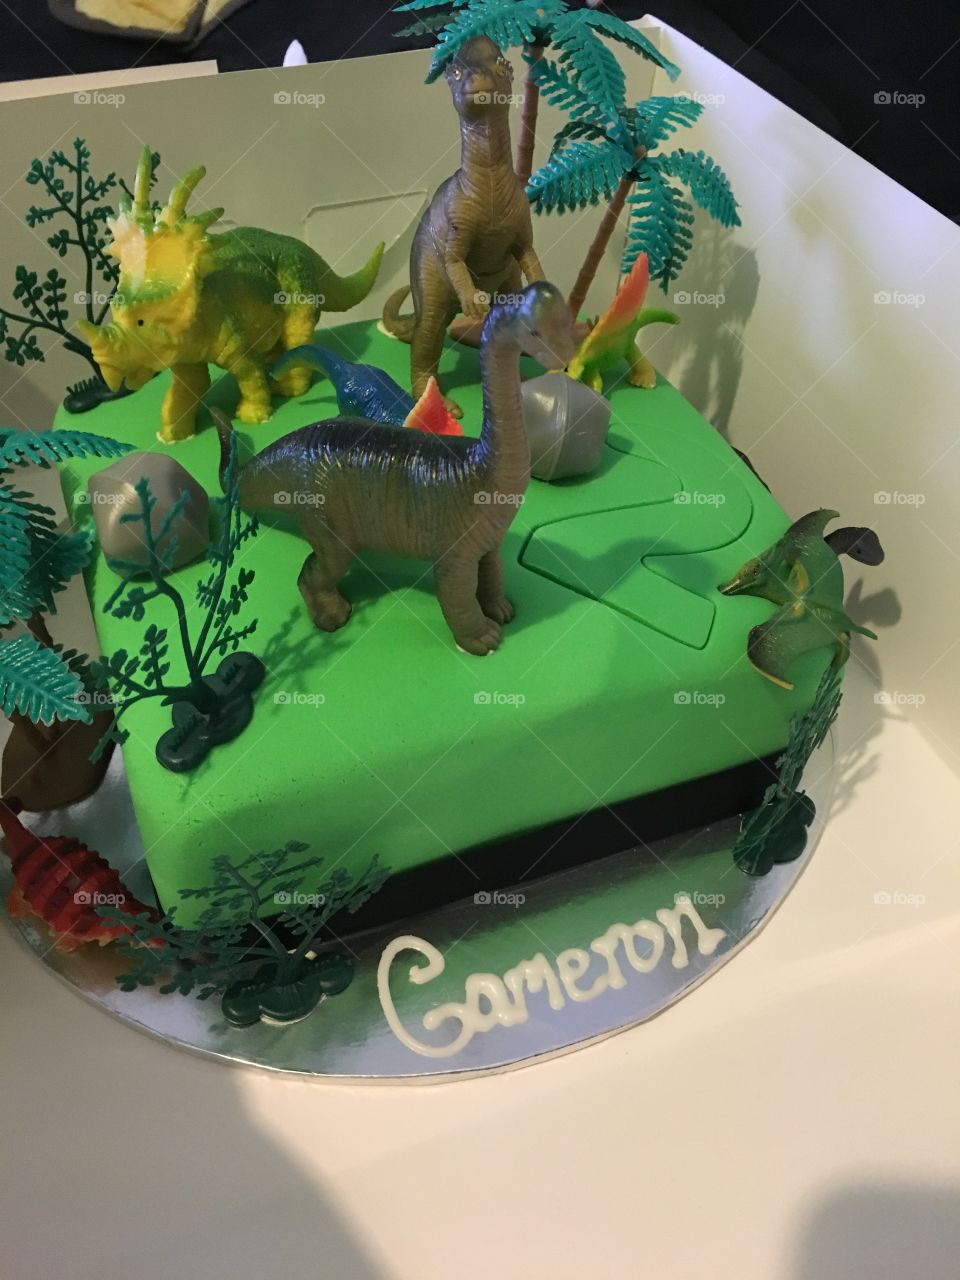 Cake making - dinosaurs